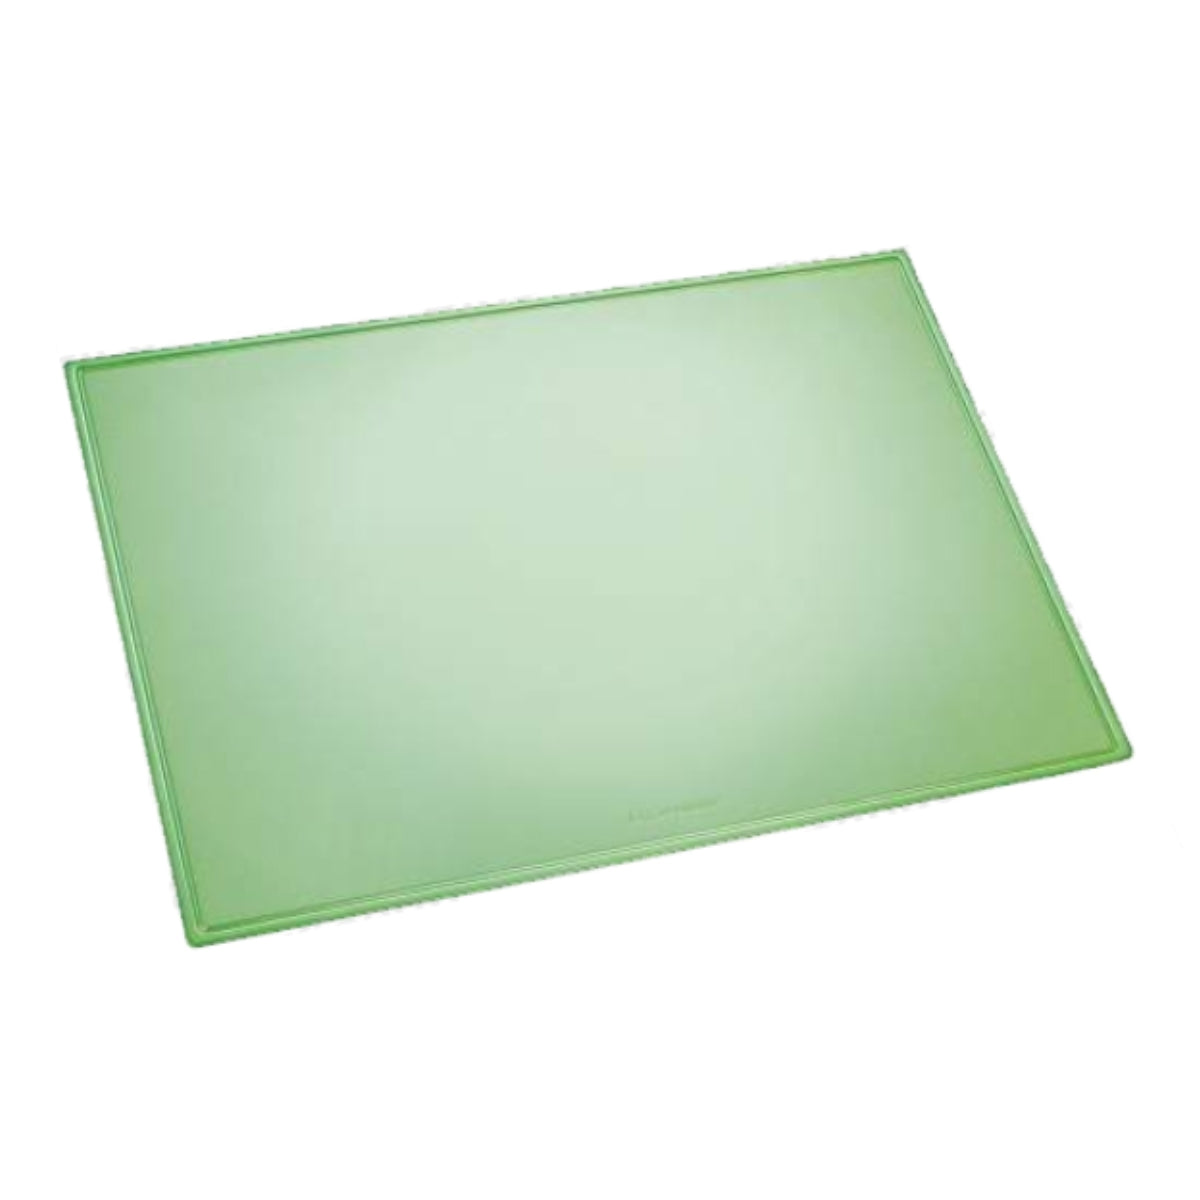 Laufer Durella Desk Mat, 53 x 40 cm, Translucent Green